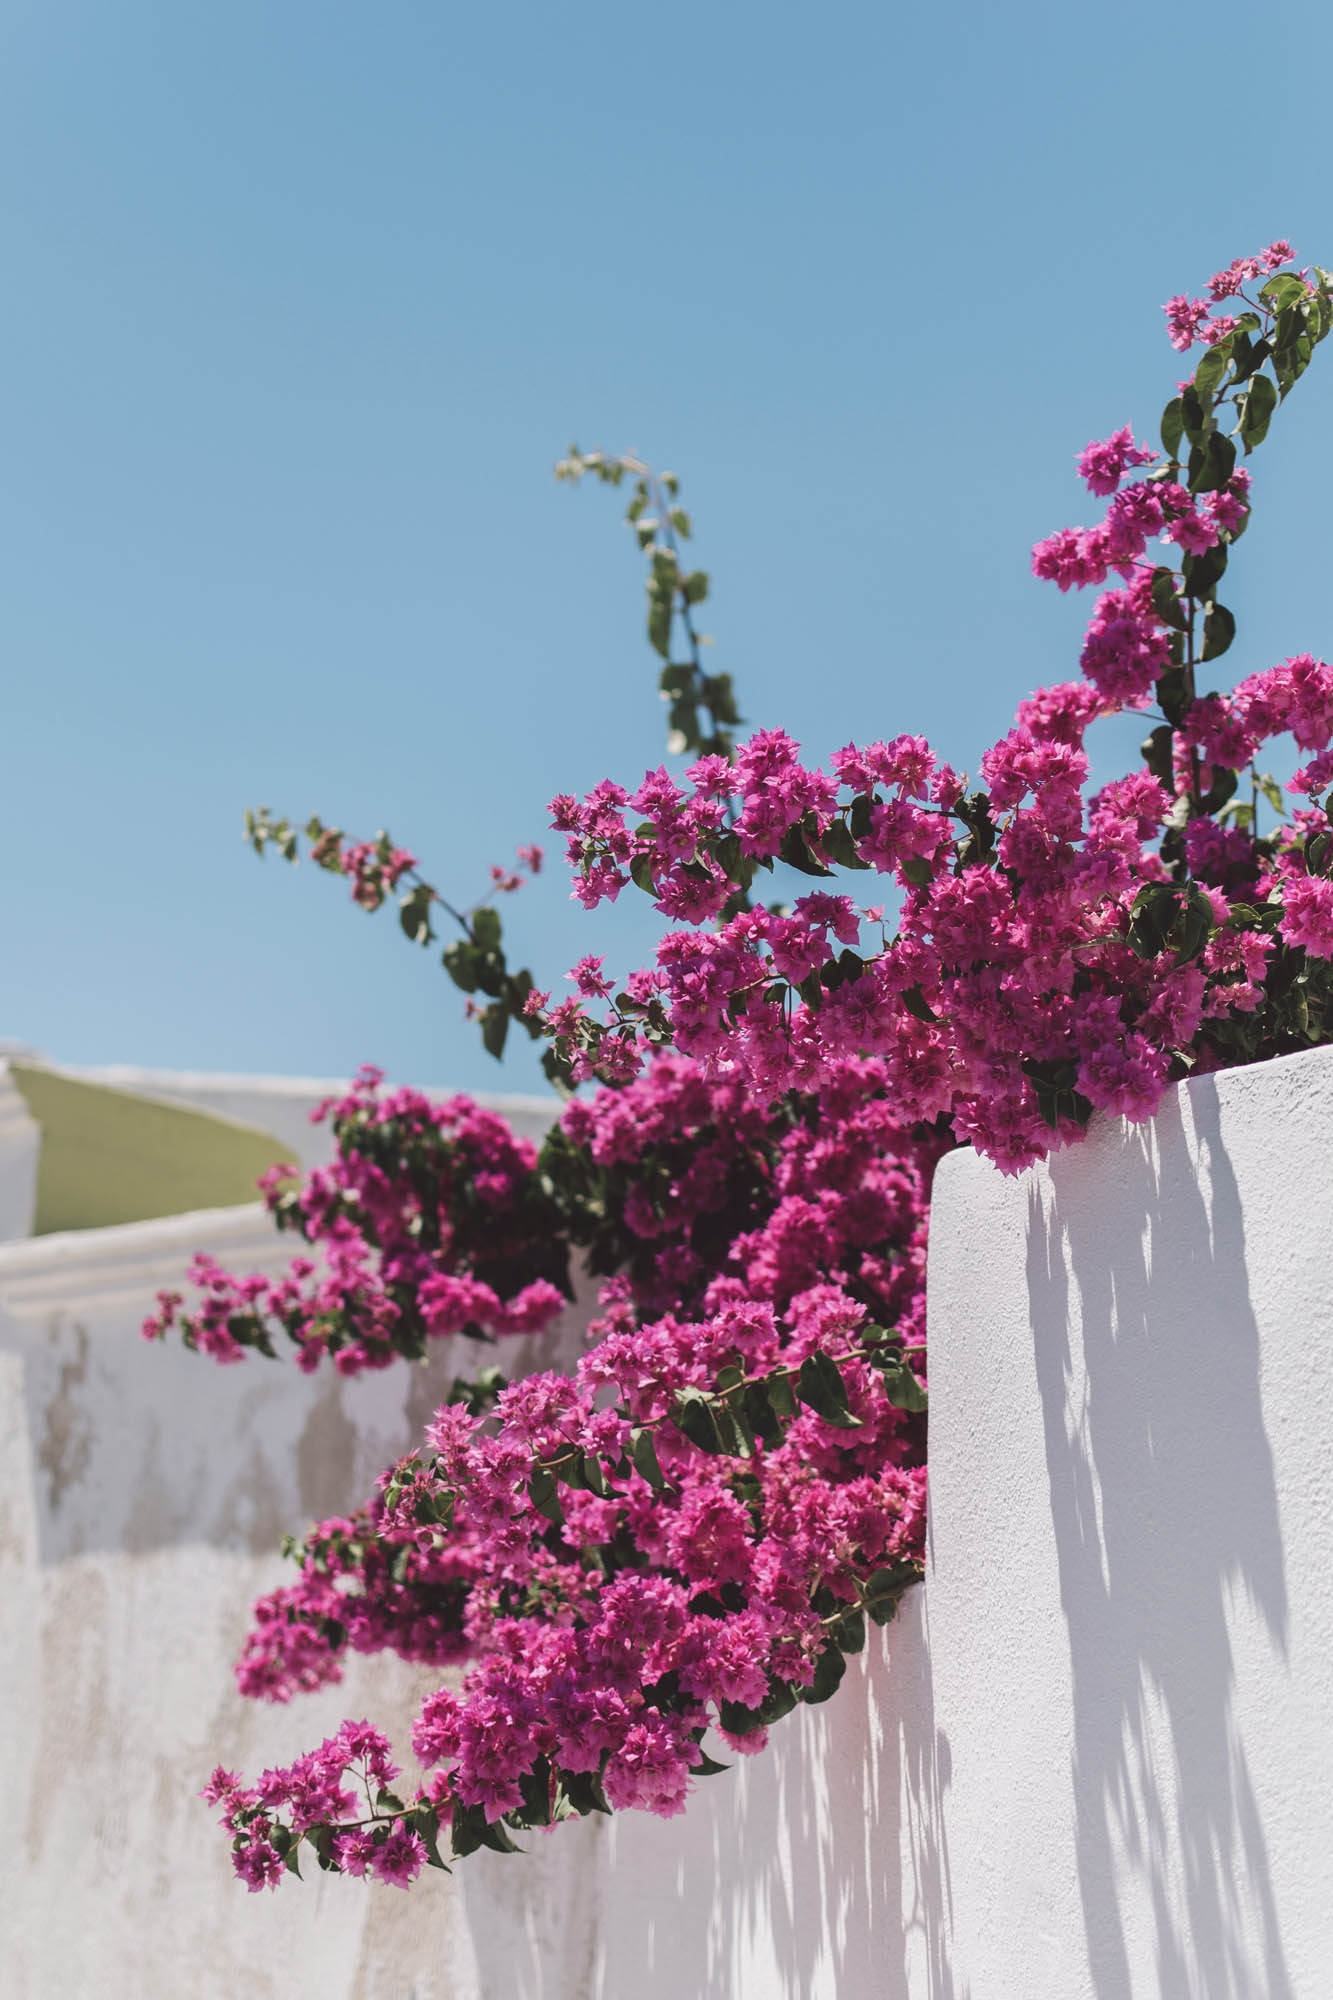 biała ściana i różowe kwiaty, typowe greckie widoki, detal